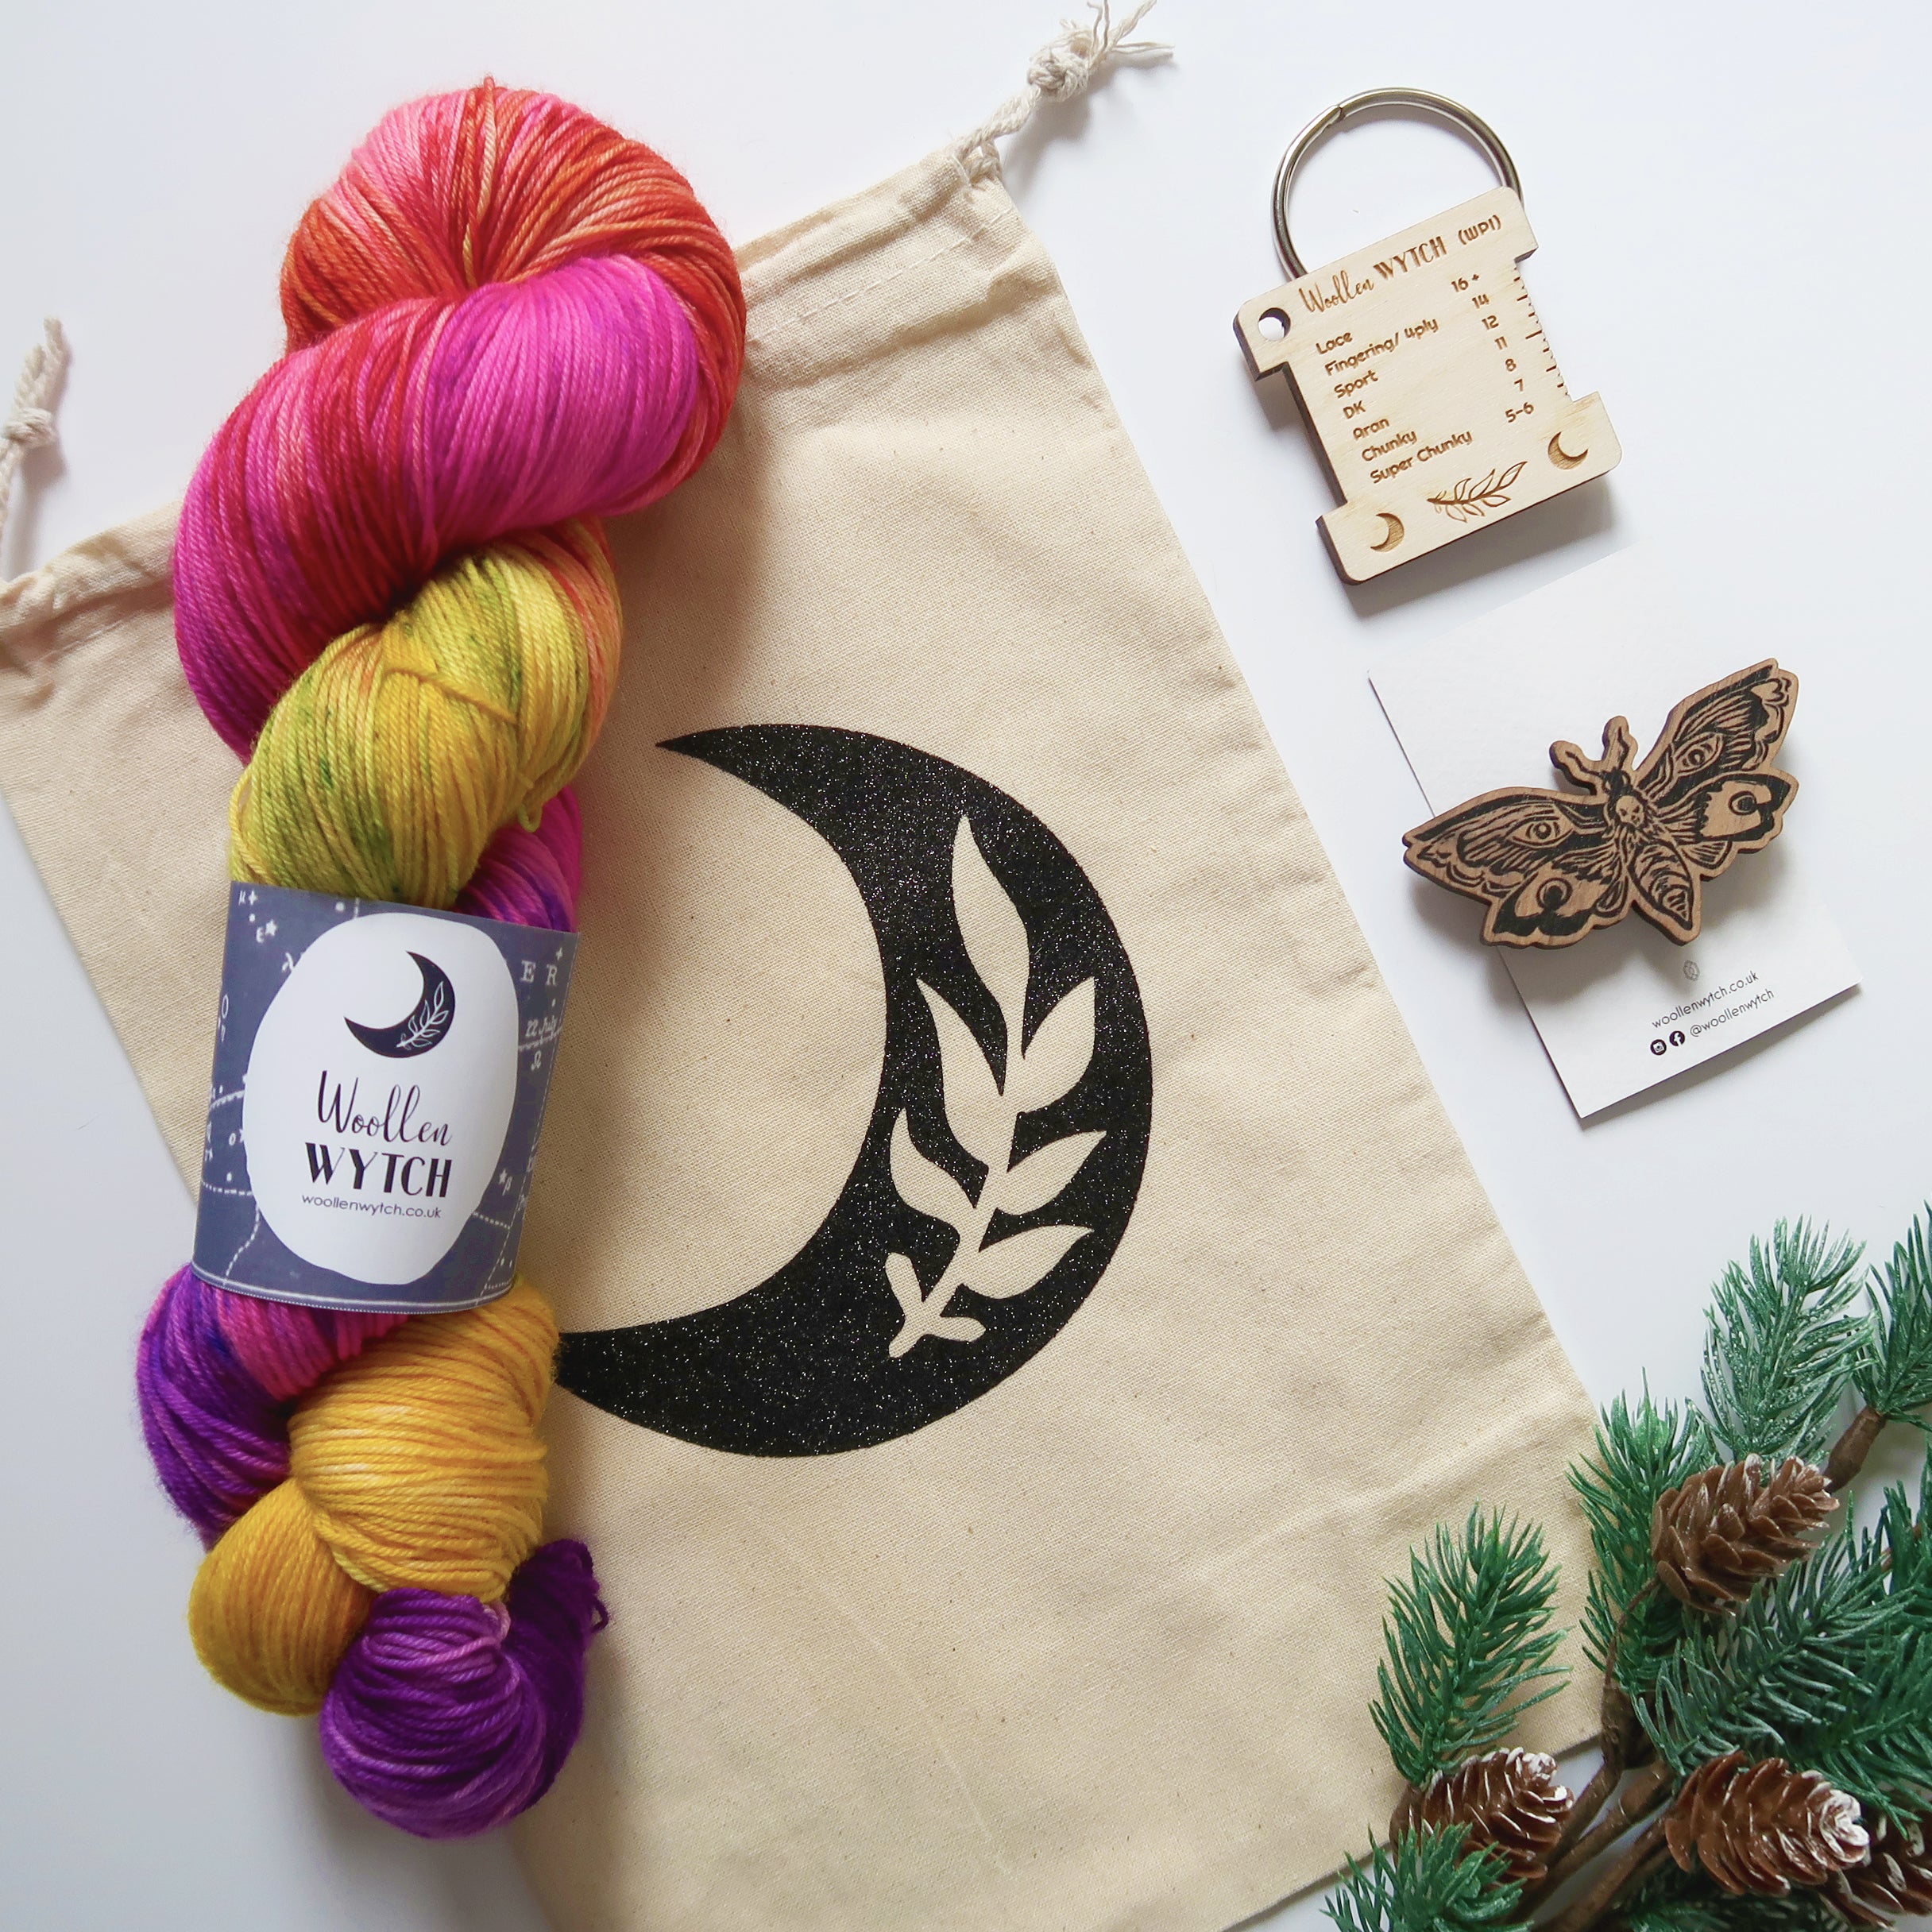 Christmas Advent Calendar hand dyed yarn uk bristol wool shop Woollen Wytch